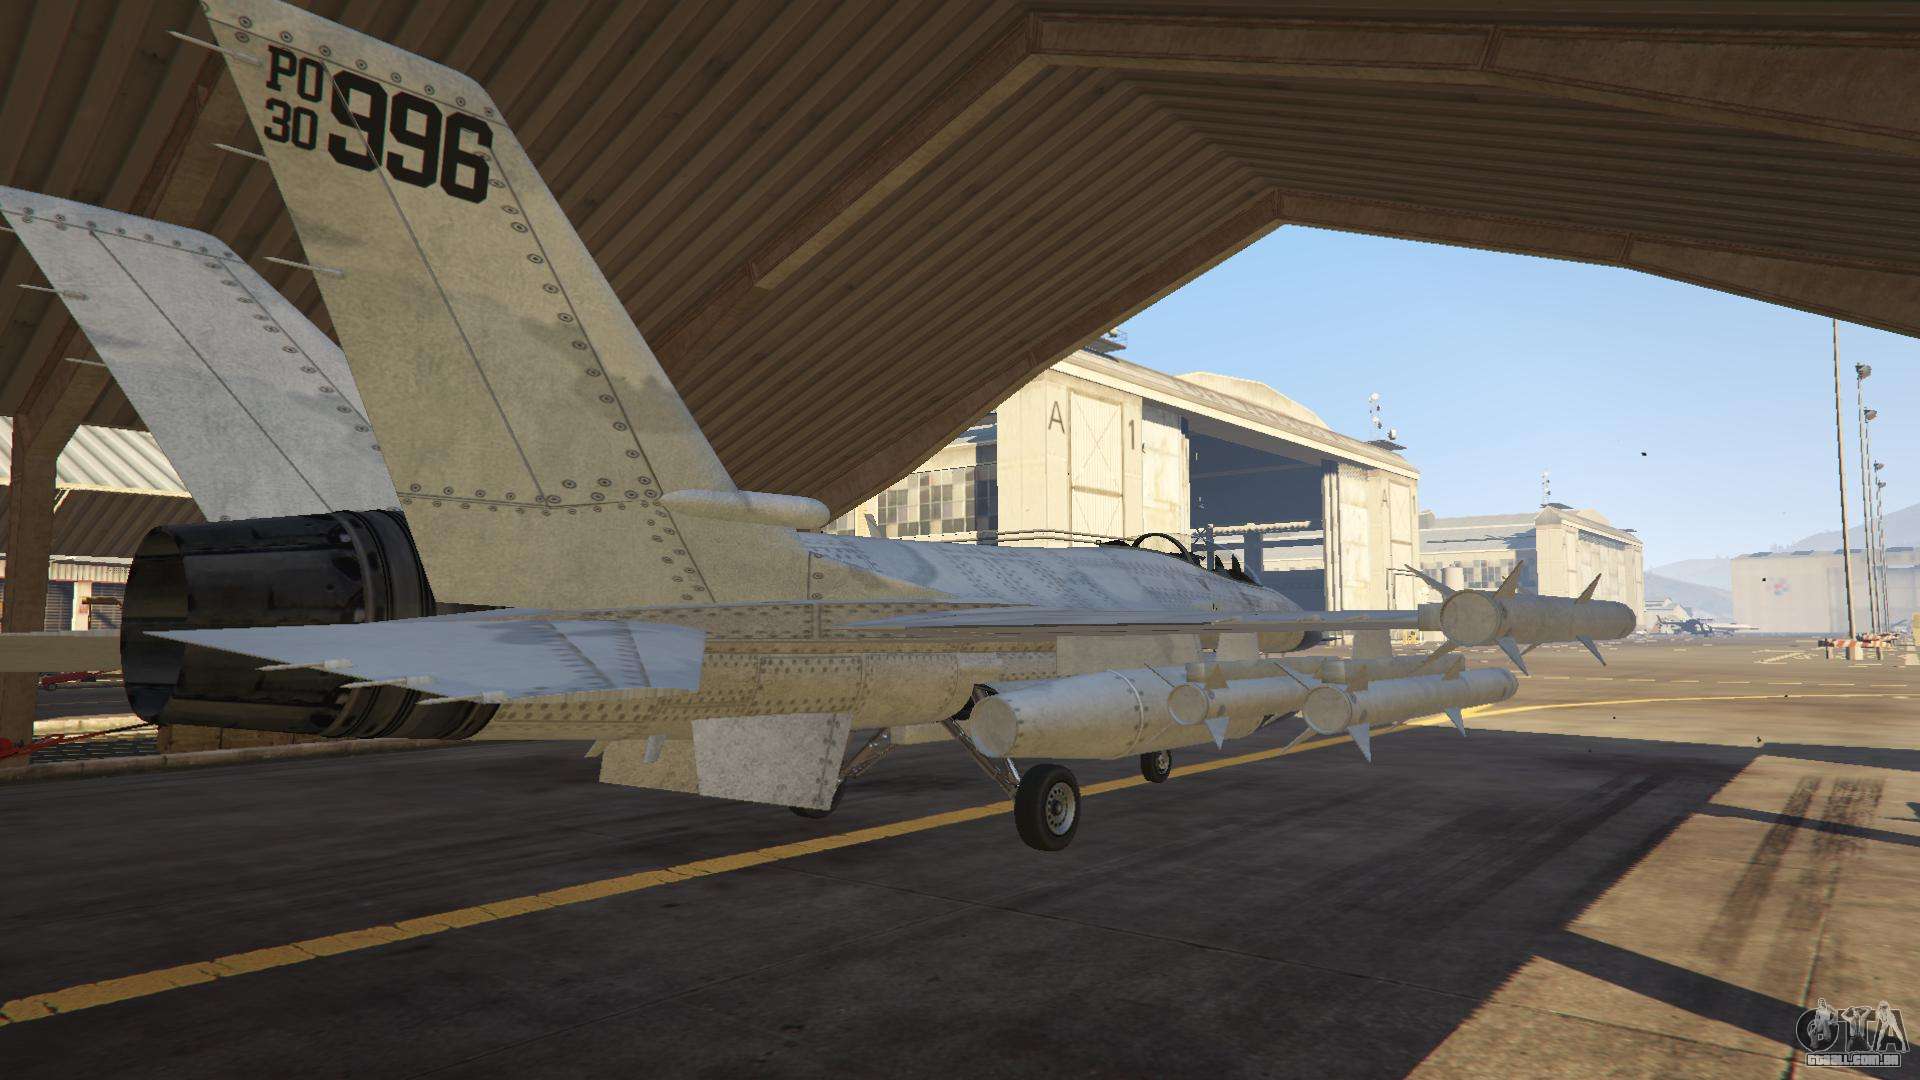 GTA 5: como roubar tanques de guerra, jatos e aviões